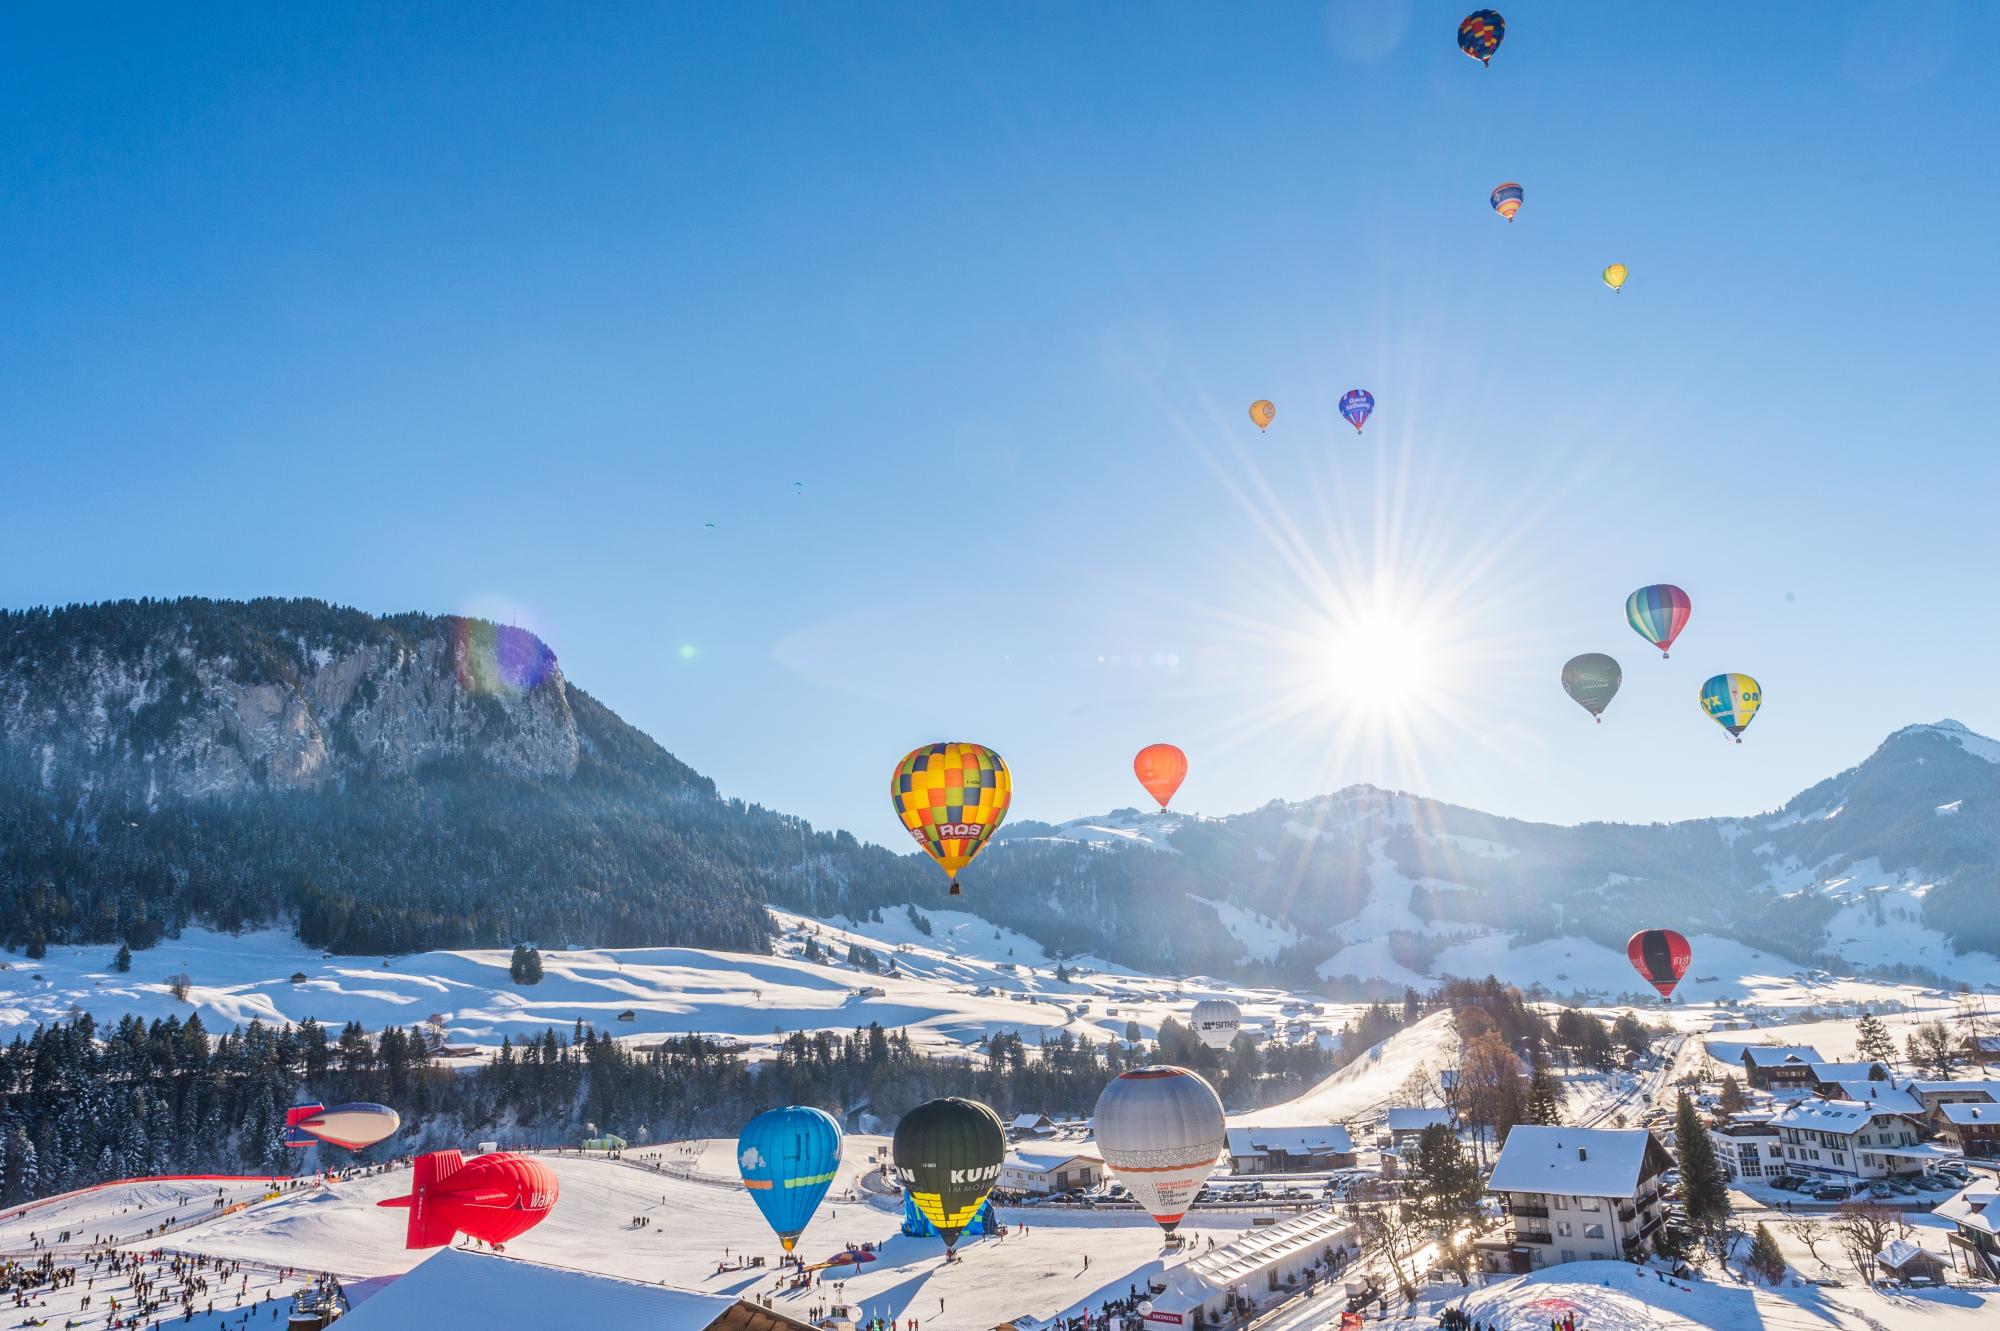 Hot air balloon flight between the Alps and Munich